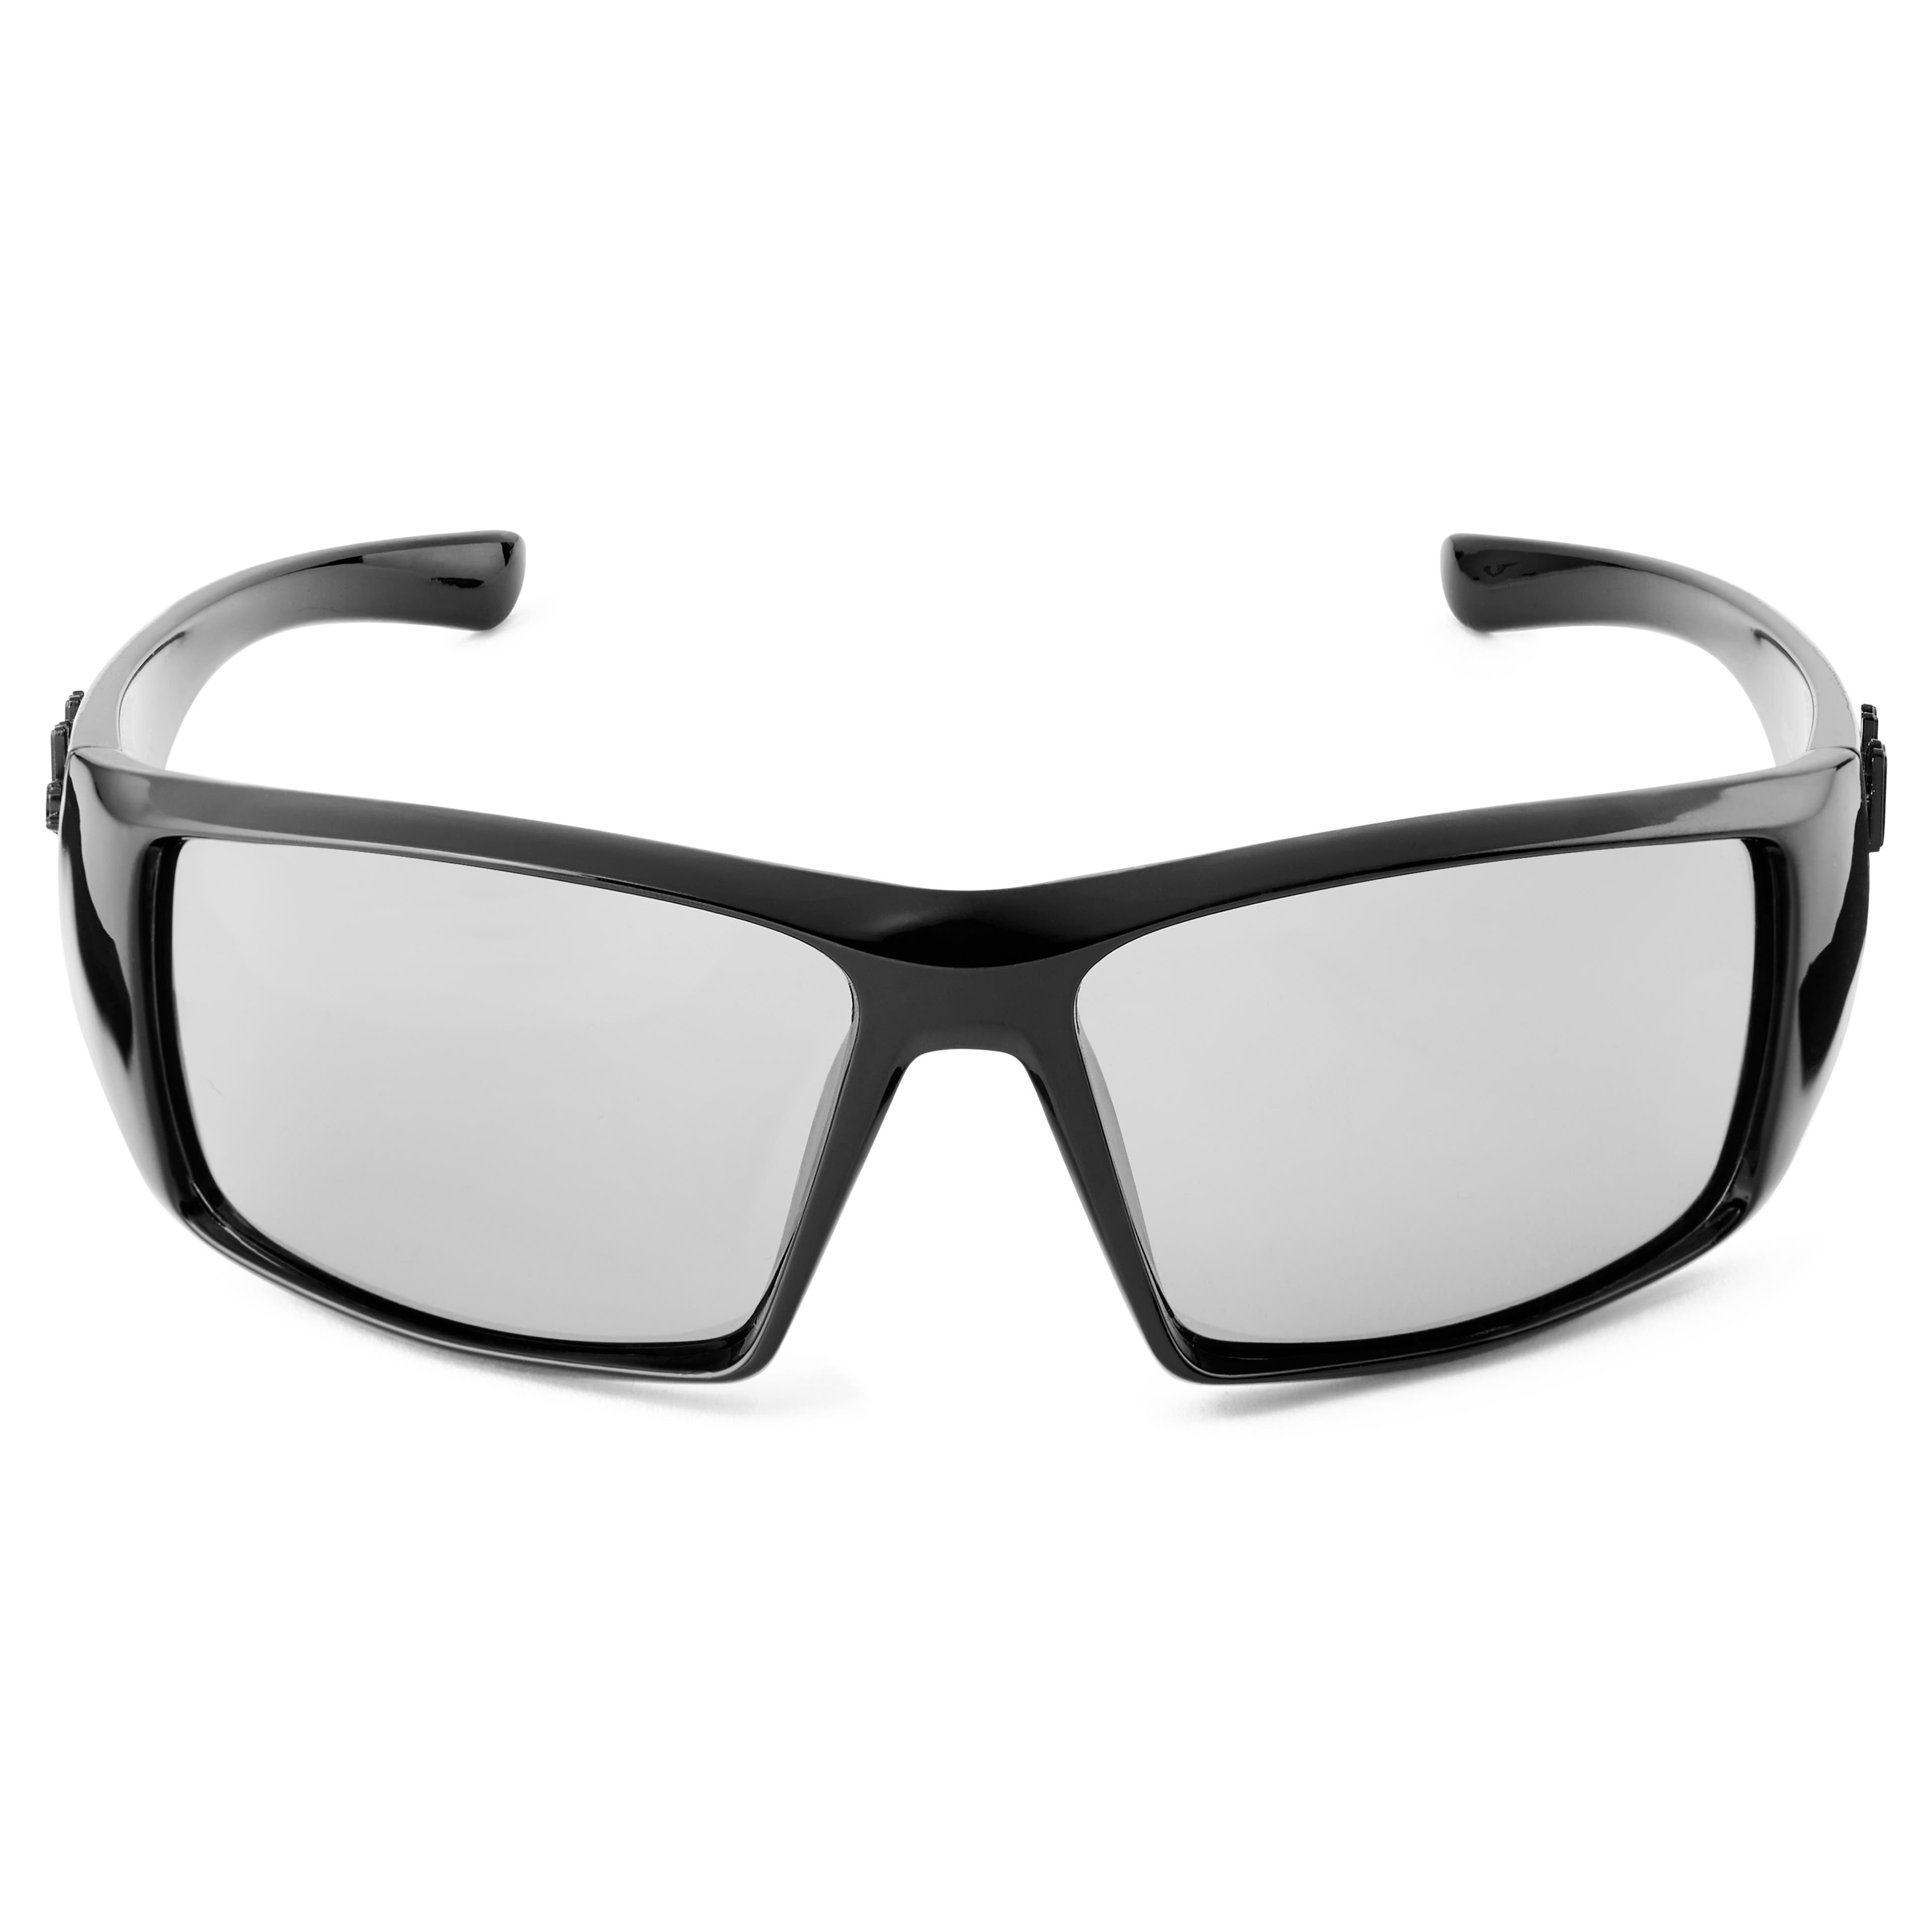 Gafas de sol polarizadas categoría 2 en negro y gris Verge Mick X